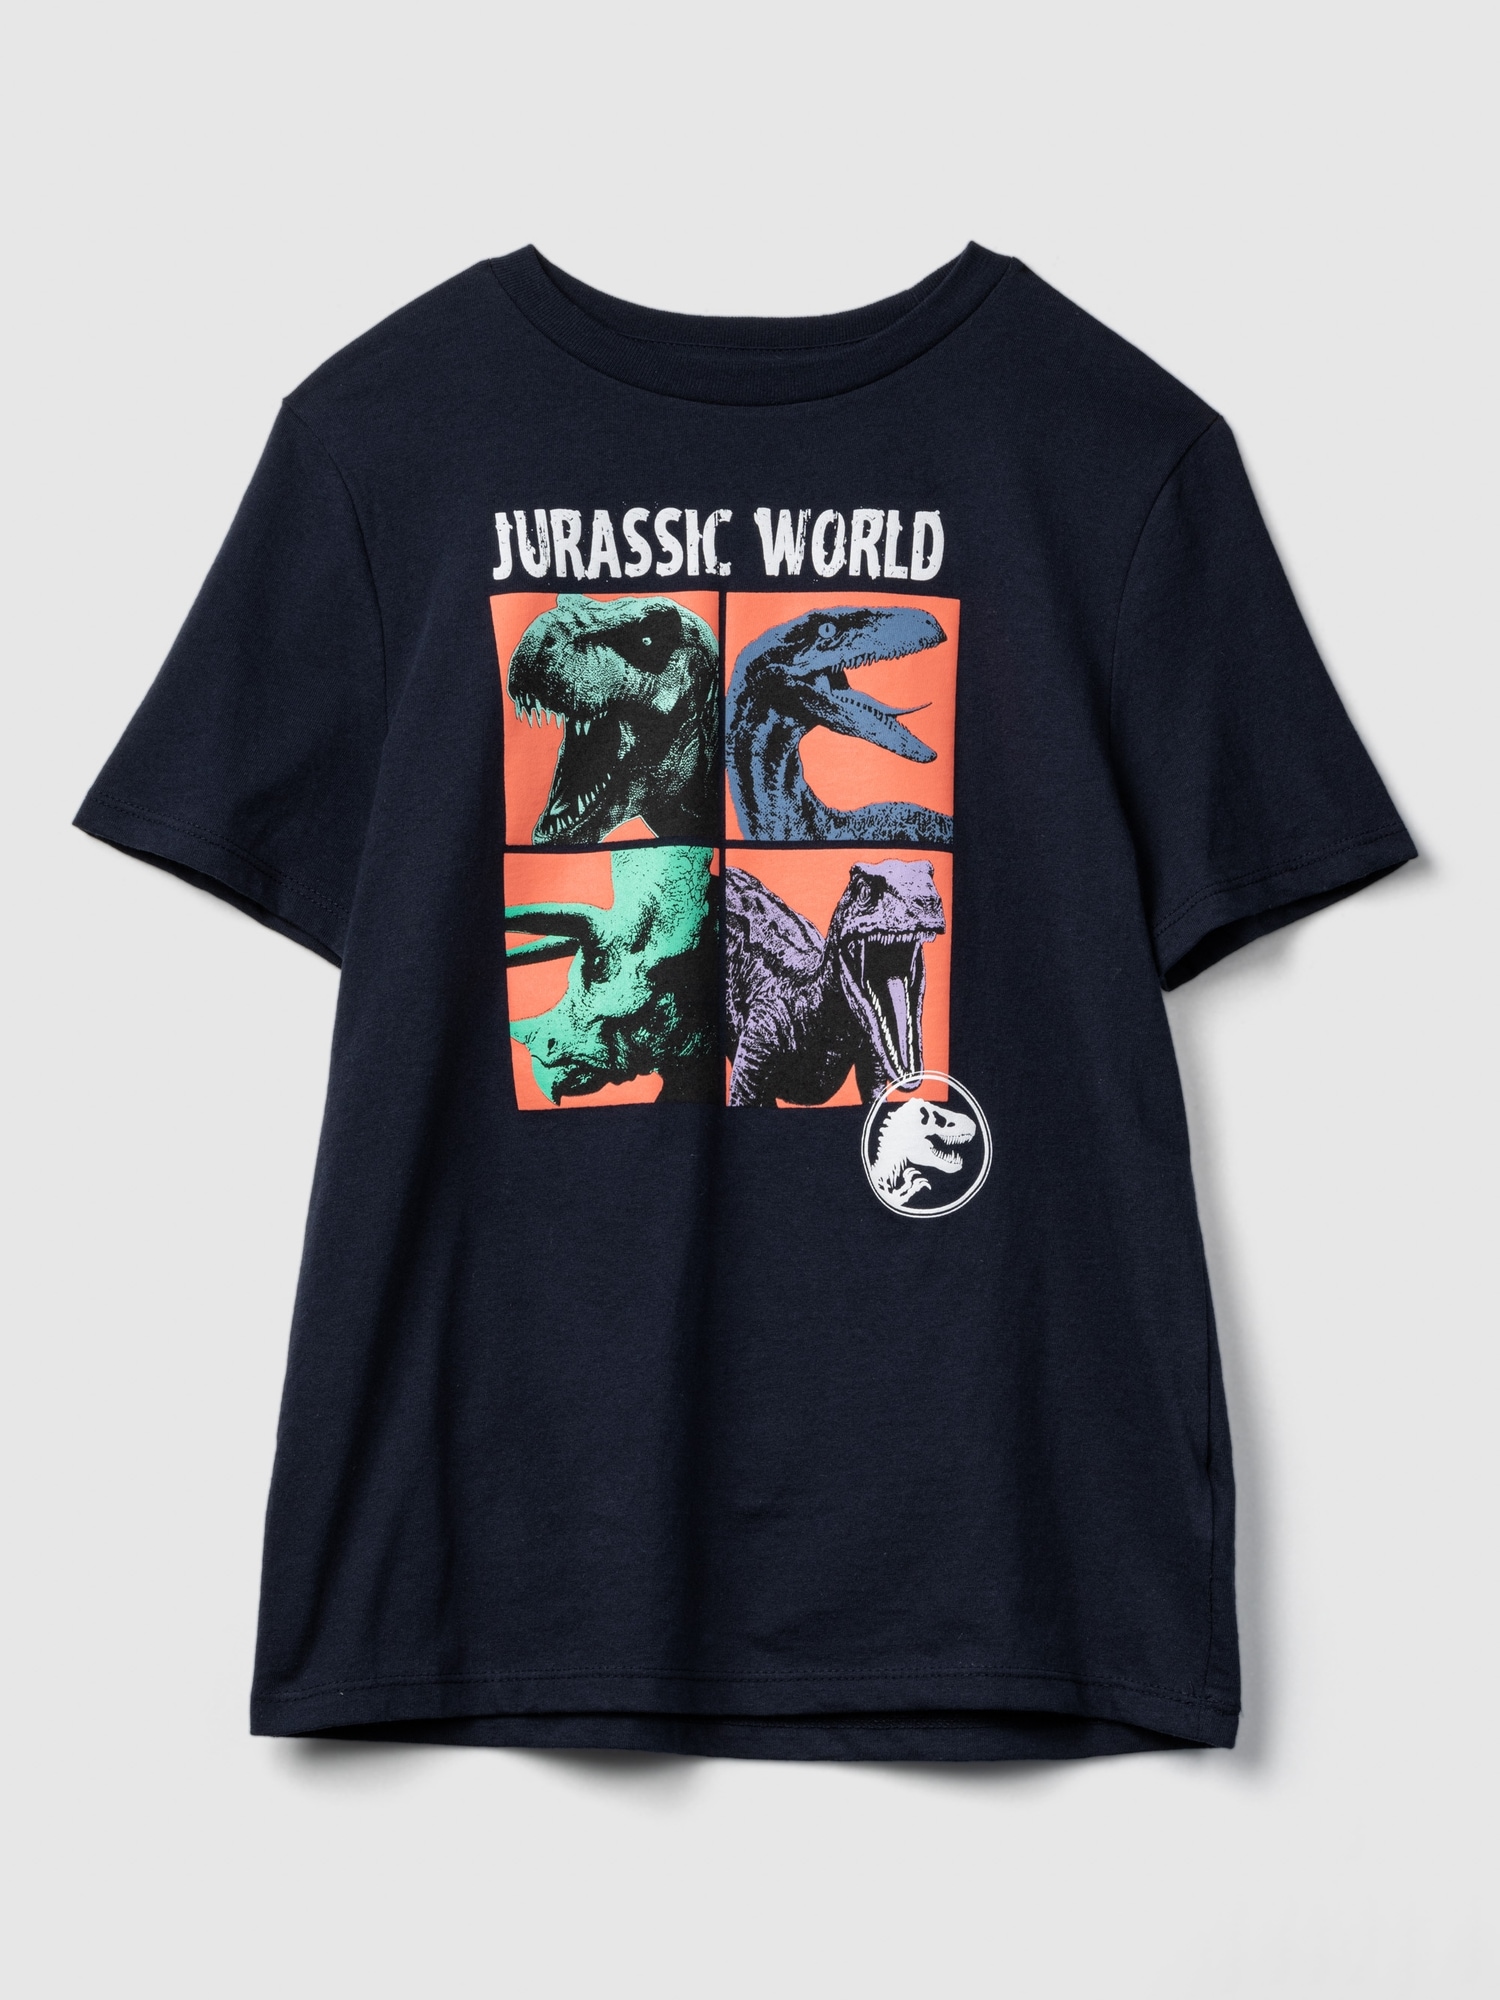 Jurassic world ジュラシックワールド Tシャツ